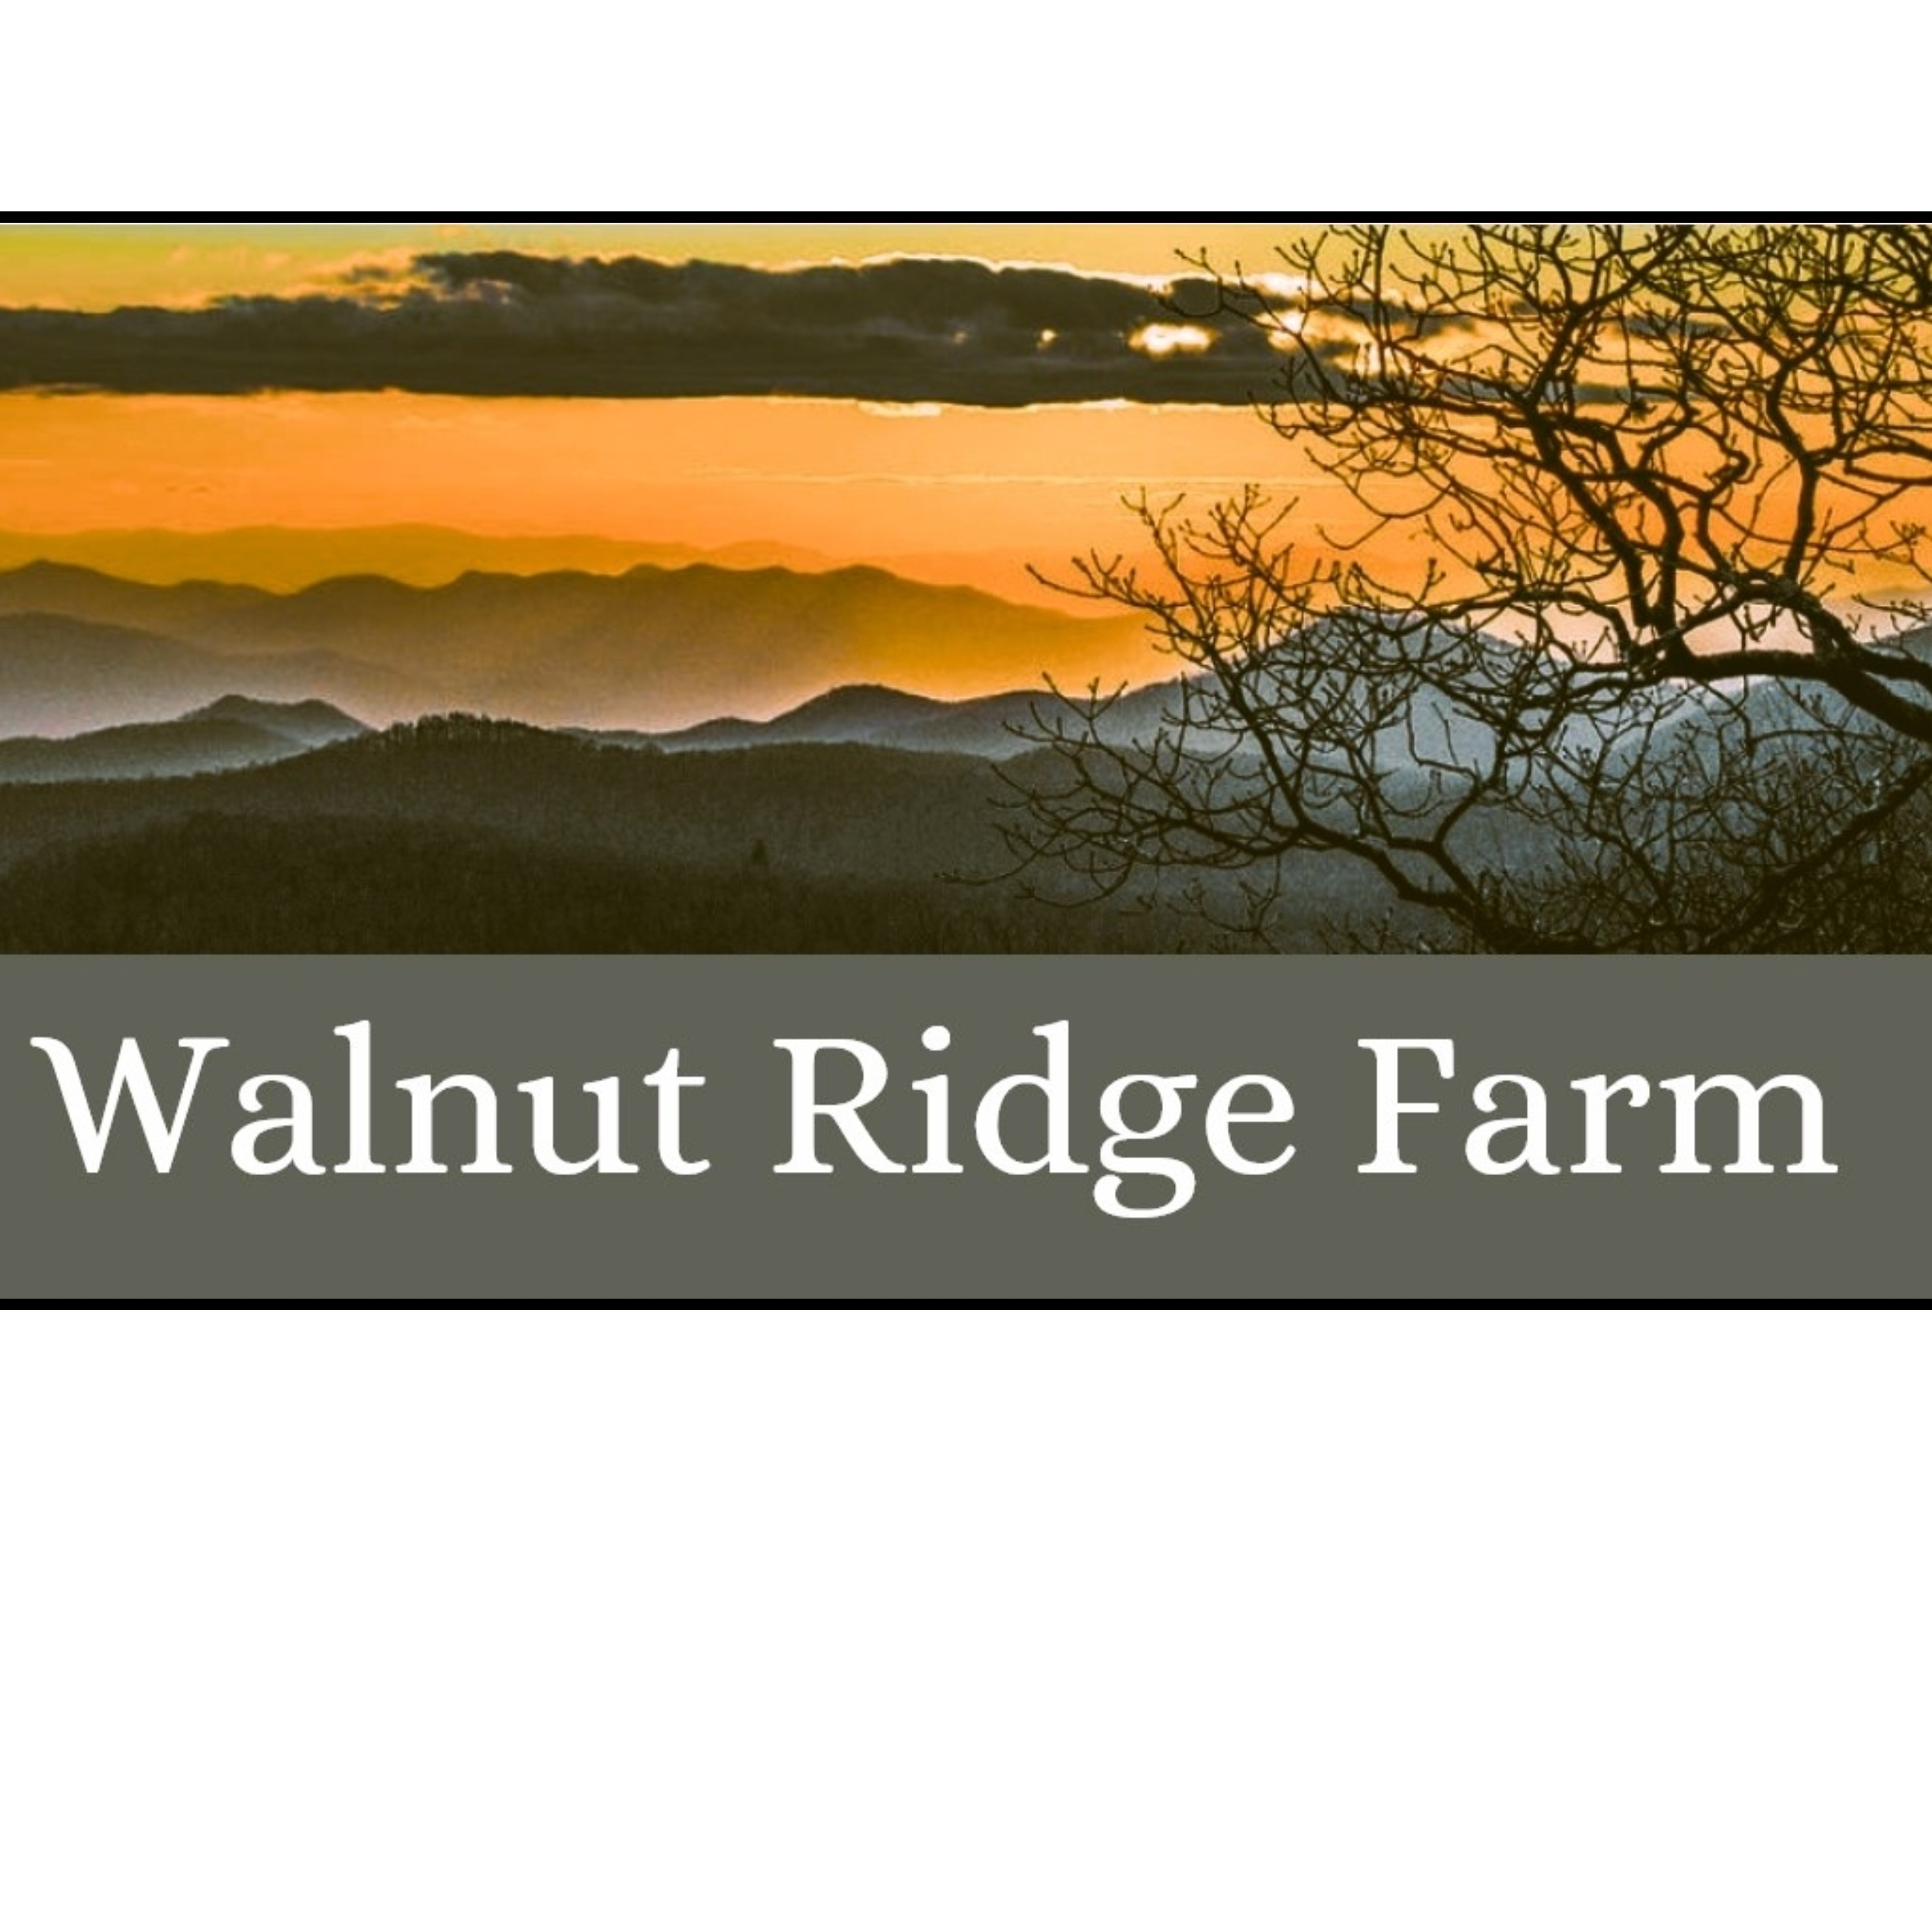 Walnut Ridge Farm